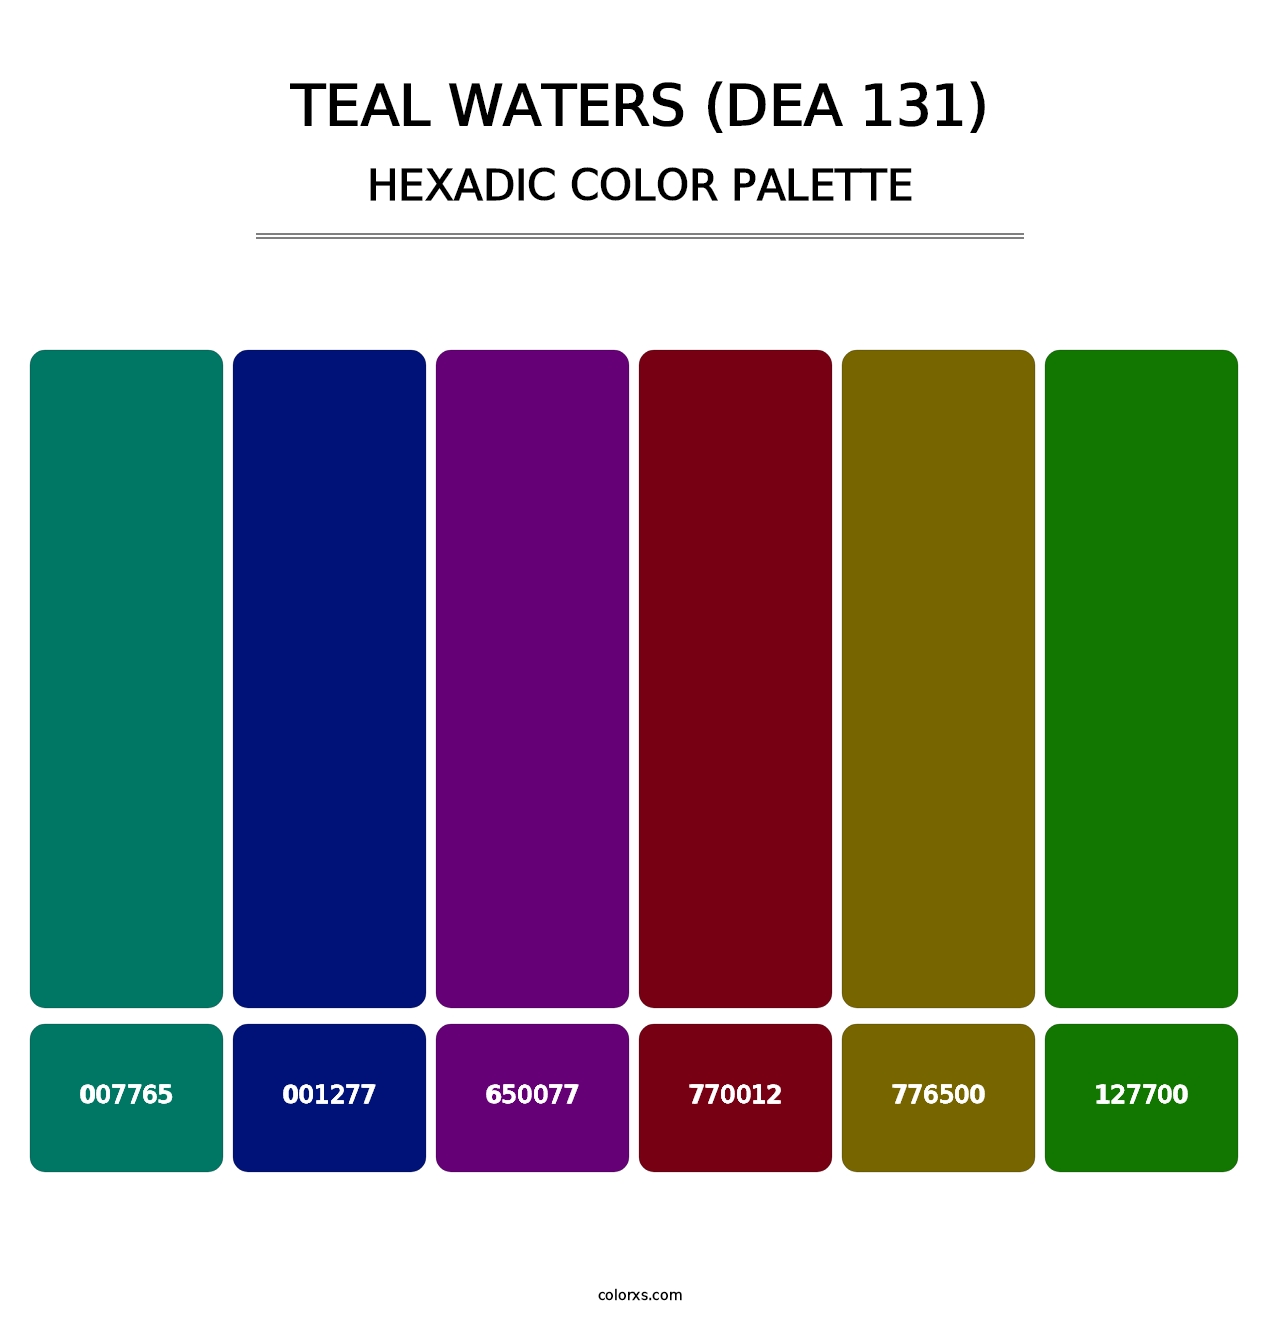 Teal Waters (DEA 131) - Hexadic Color Palette